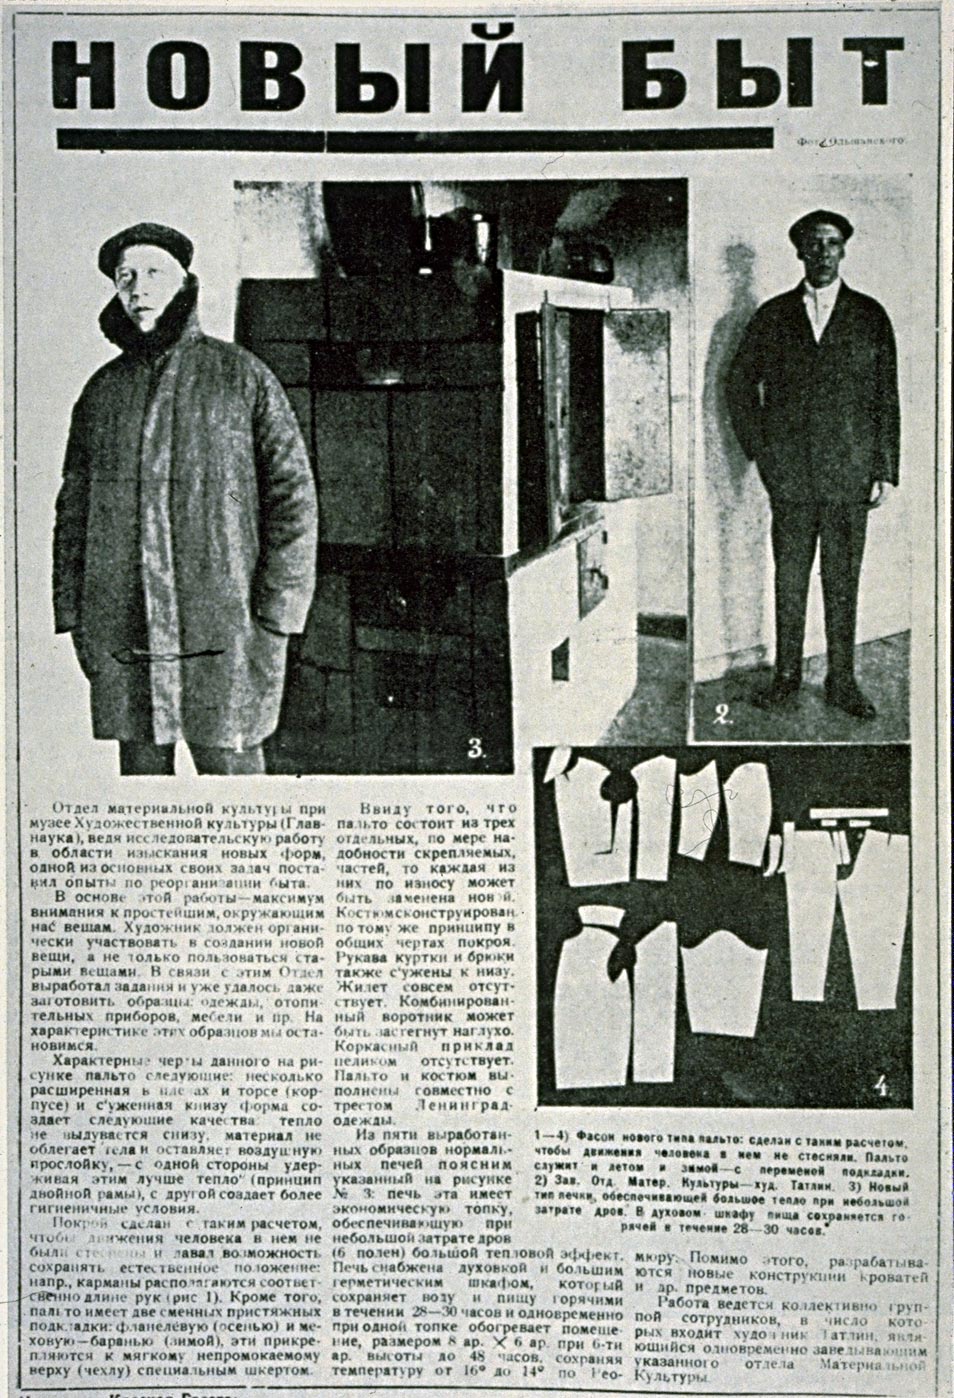 В. Татлин стоит перед сконструированной им во время топливного голода «Экономической печью». 1924 год. Эта печь давала максимум тепла при минимуме топлива. На Татлине куртка, сделанная по его модели